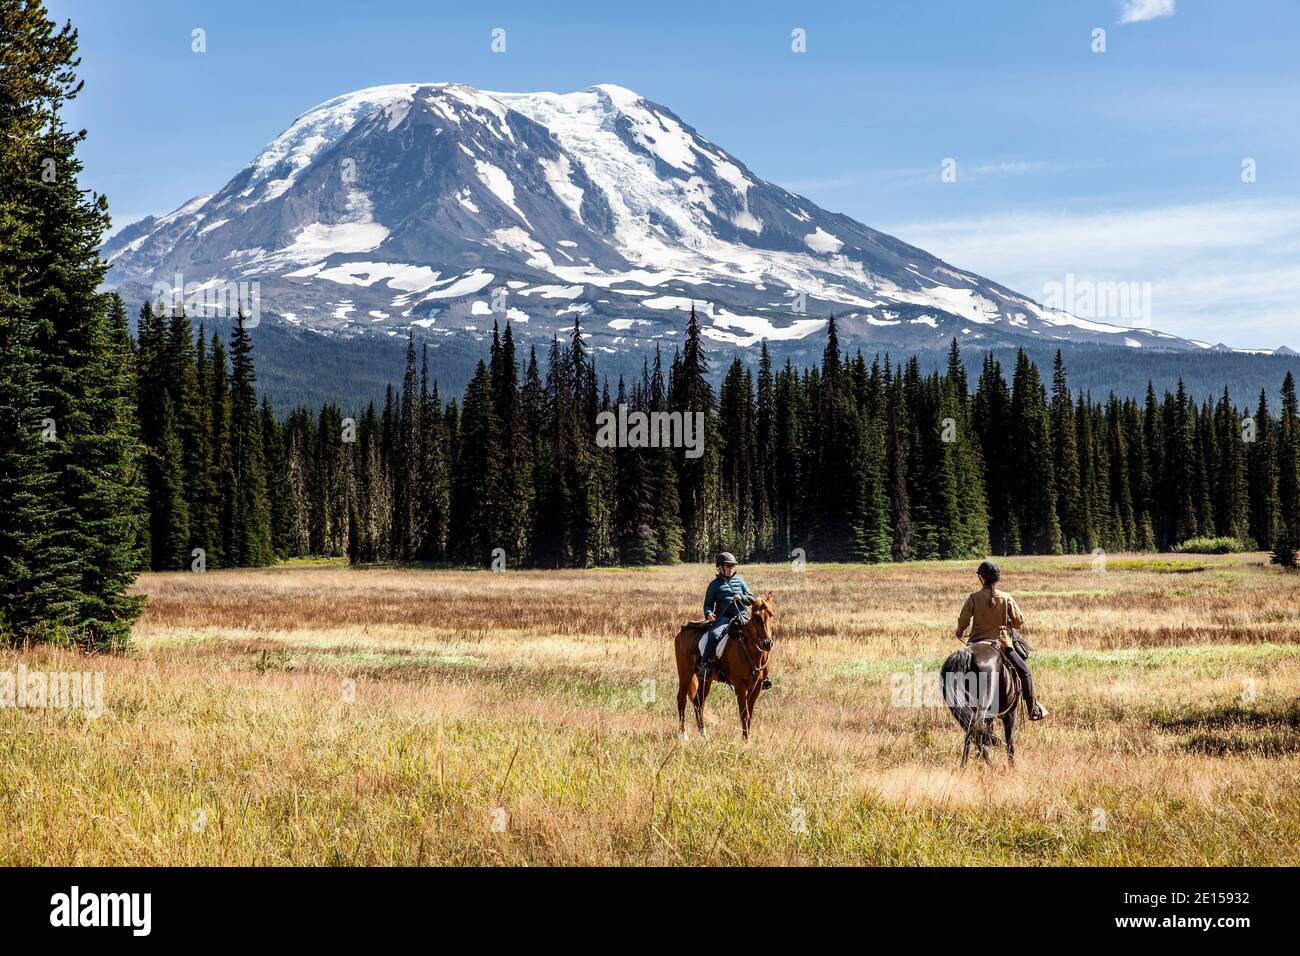 WA17636-00..... WASHINGTON - Cavalieri a cavallo sul Muddy Meadows Trail con Mount Adams sullo sfondo, Gifford Pinchot National Forest. Foto Stock